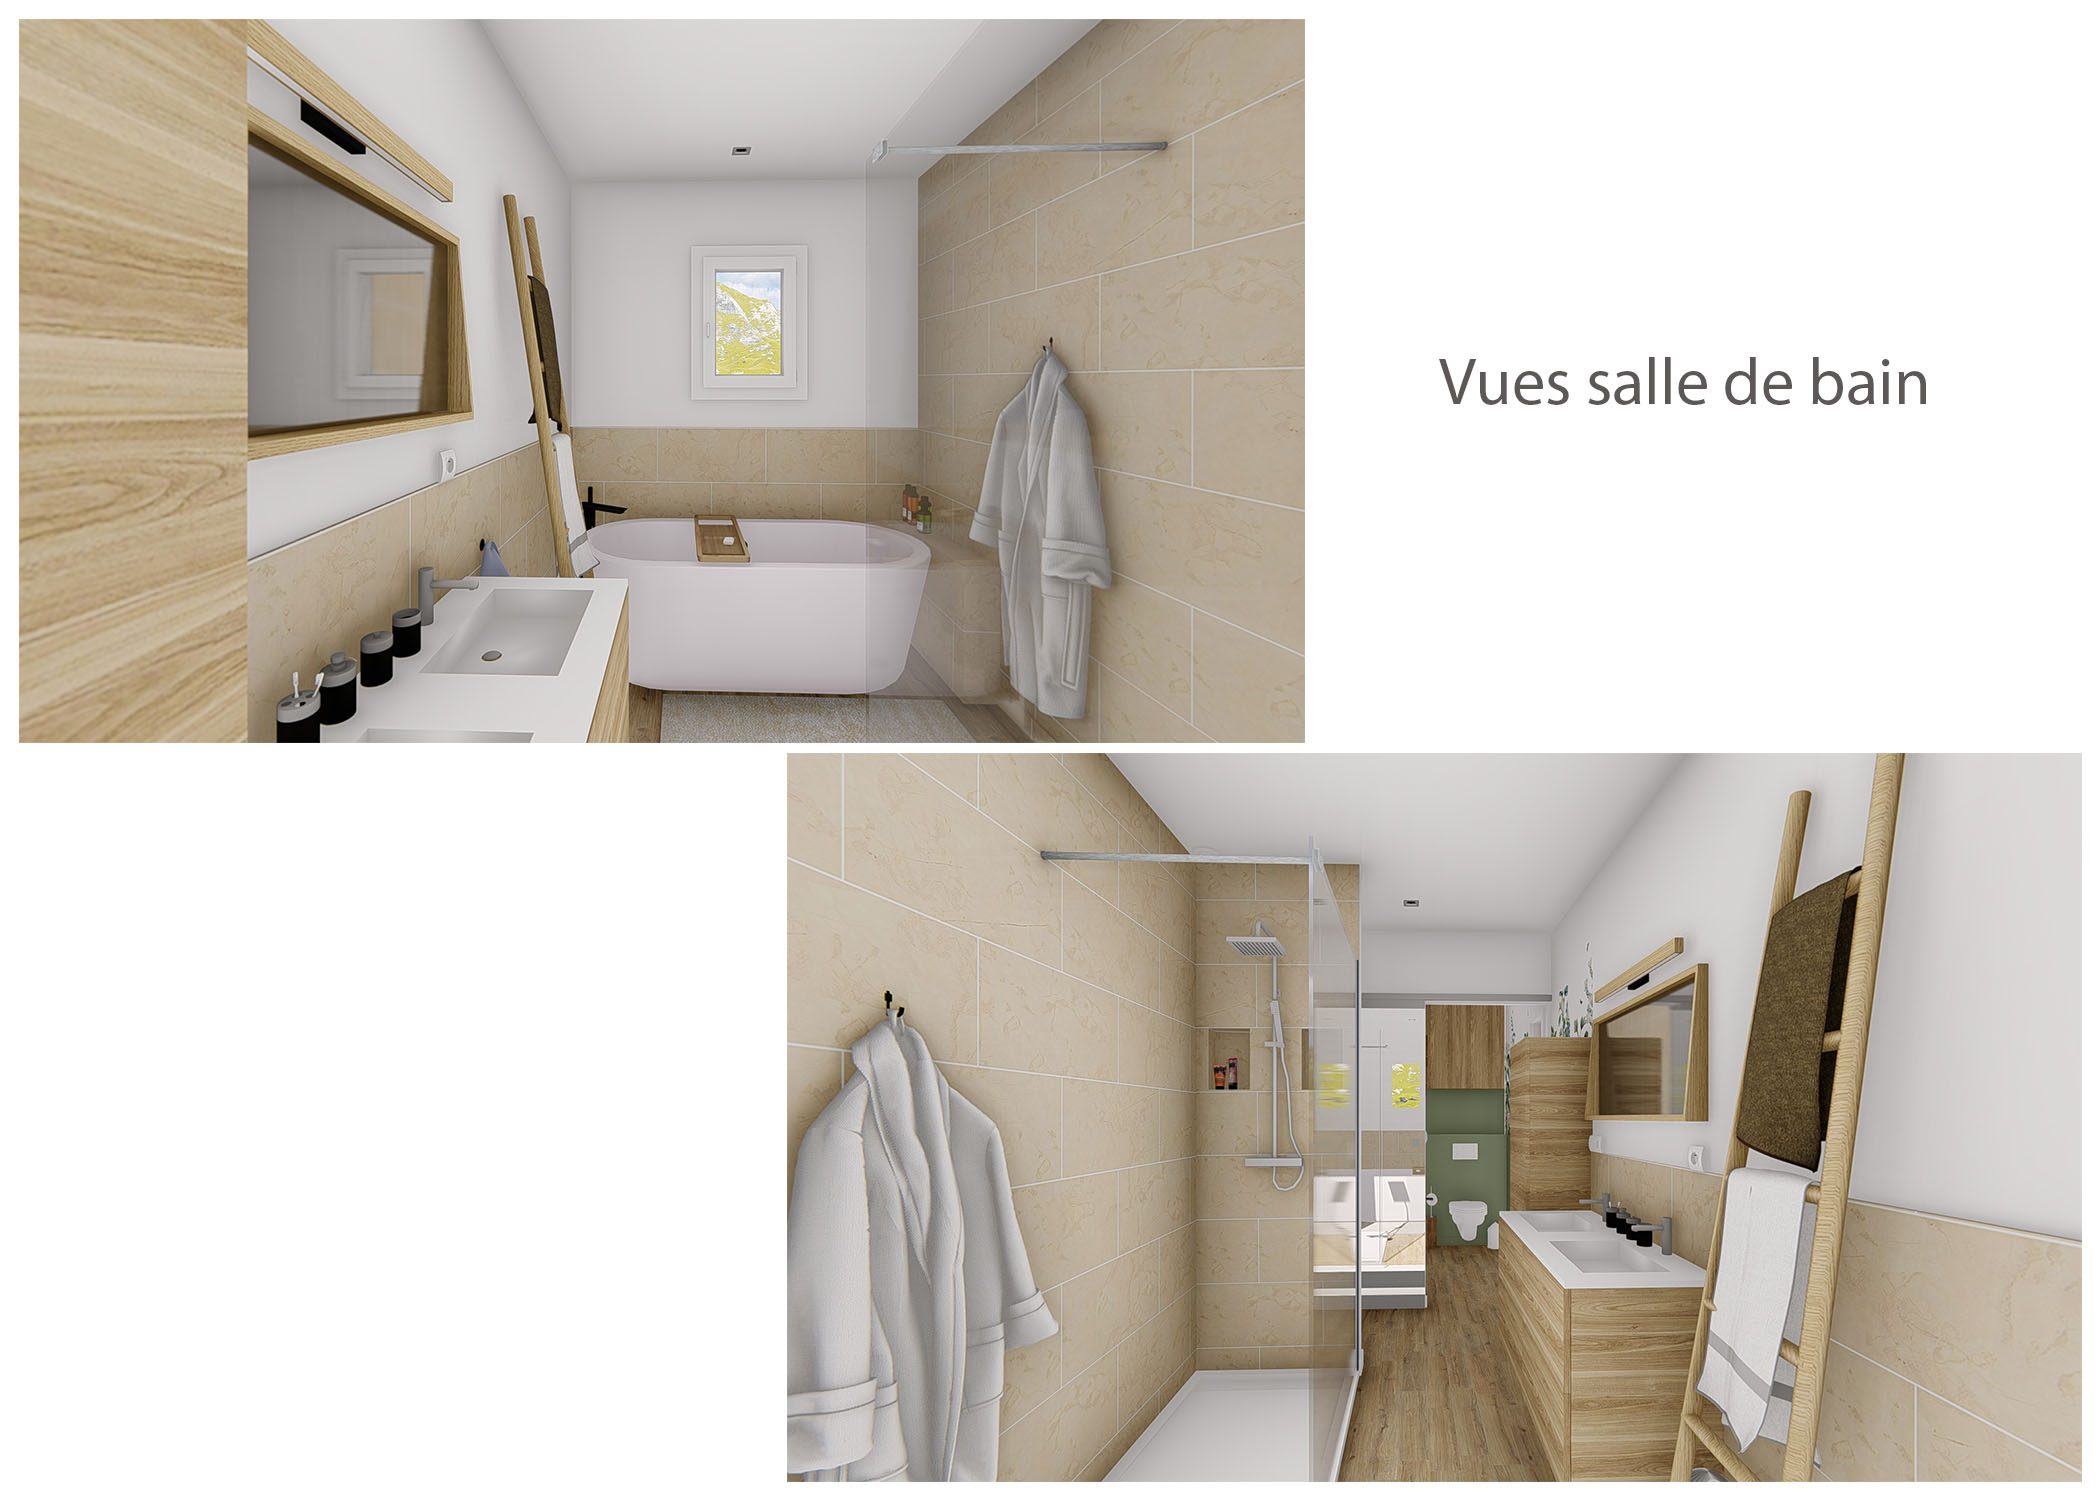 agencement-decoration-espace de vie et sanitaires peynier-vues salle de bain-dekho design